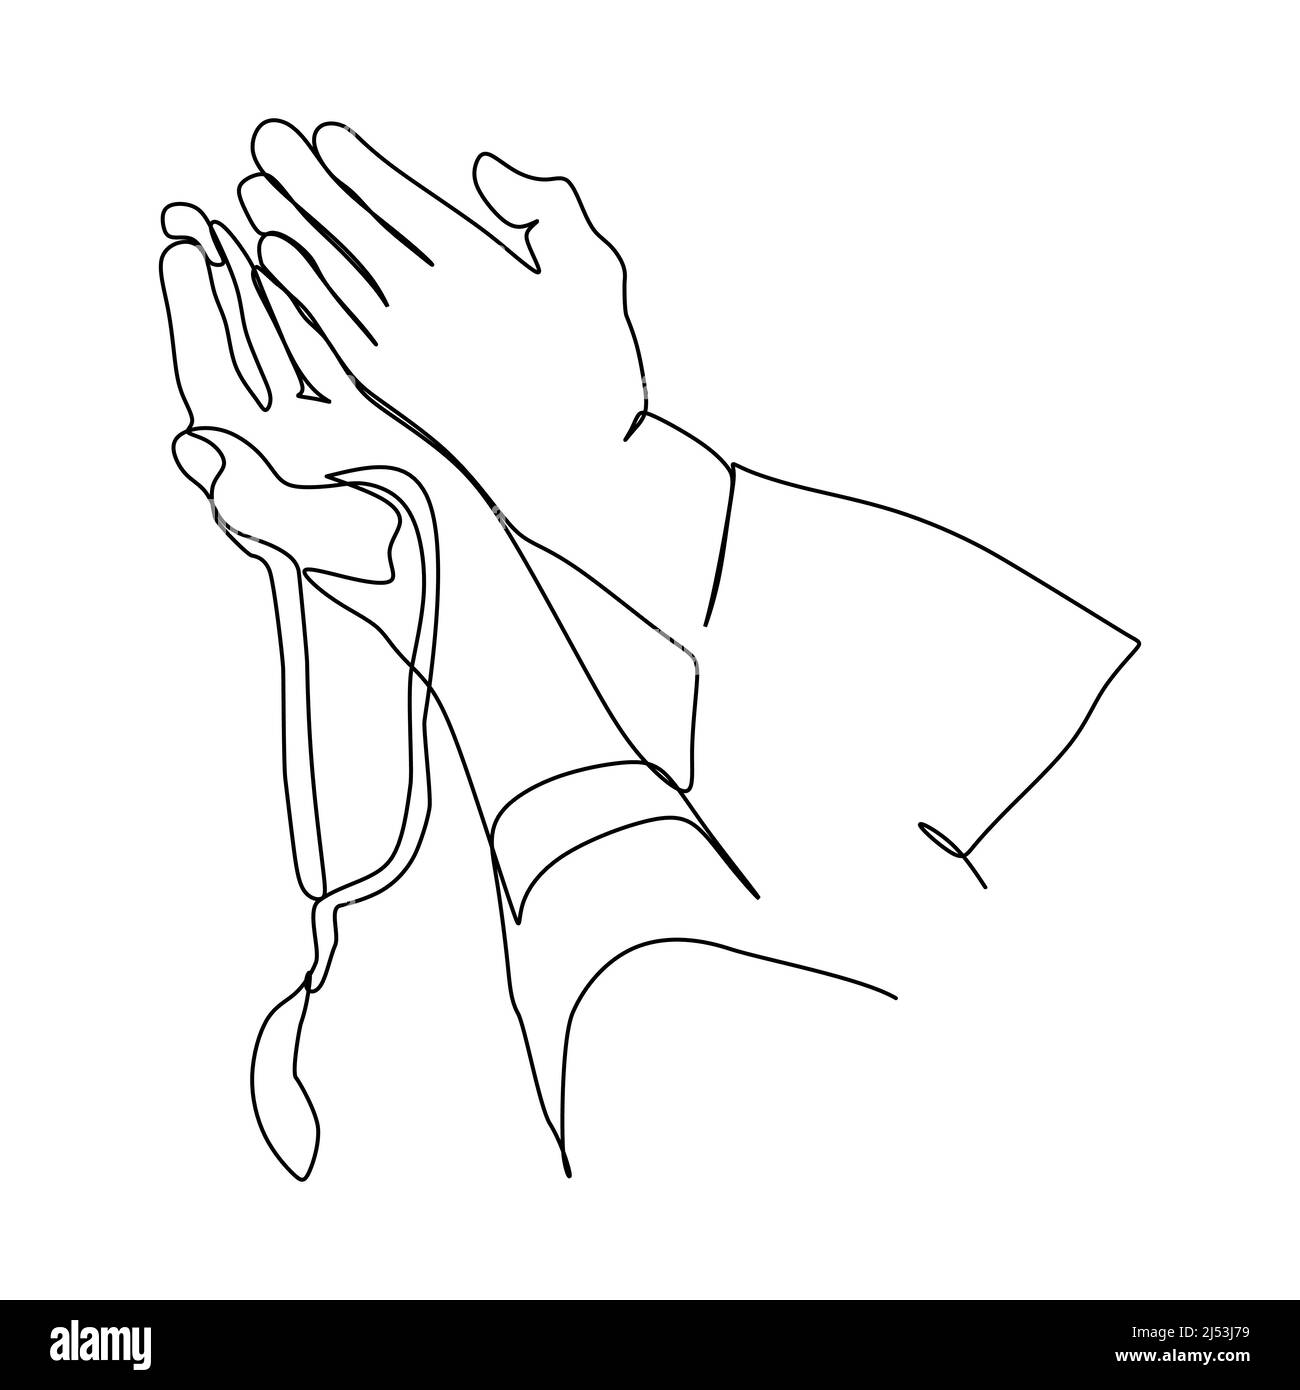 Gebetshände Linie kontinuierliche Linienzeichnung. Öffnen Sie die Handflächen zusammen Einfache Linienzeichnen Vektor-Illustration. Handgezeichnetes Design für religiöse Themen. Stock Vektor